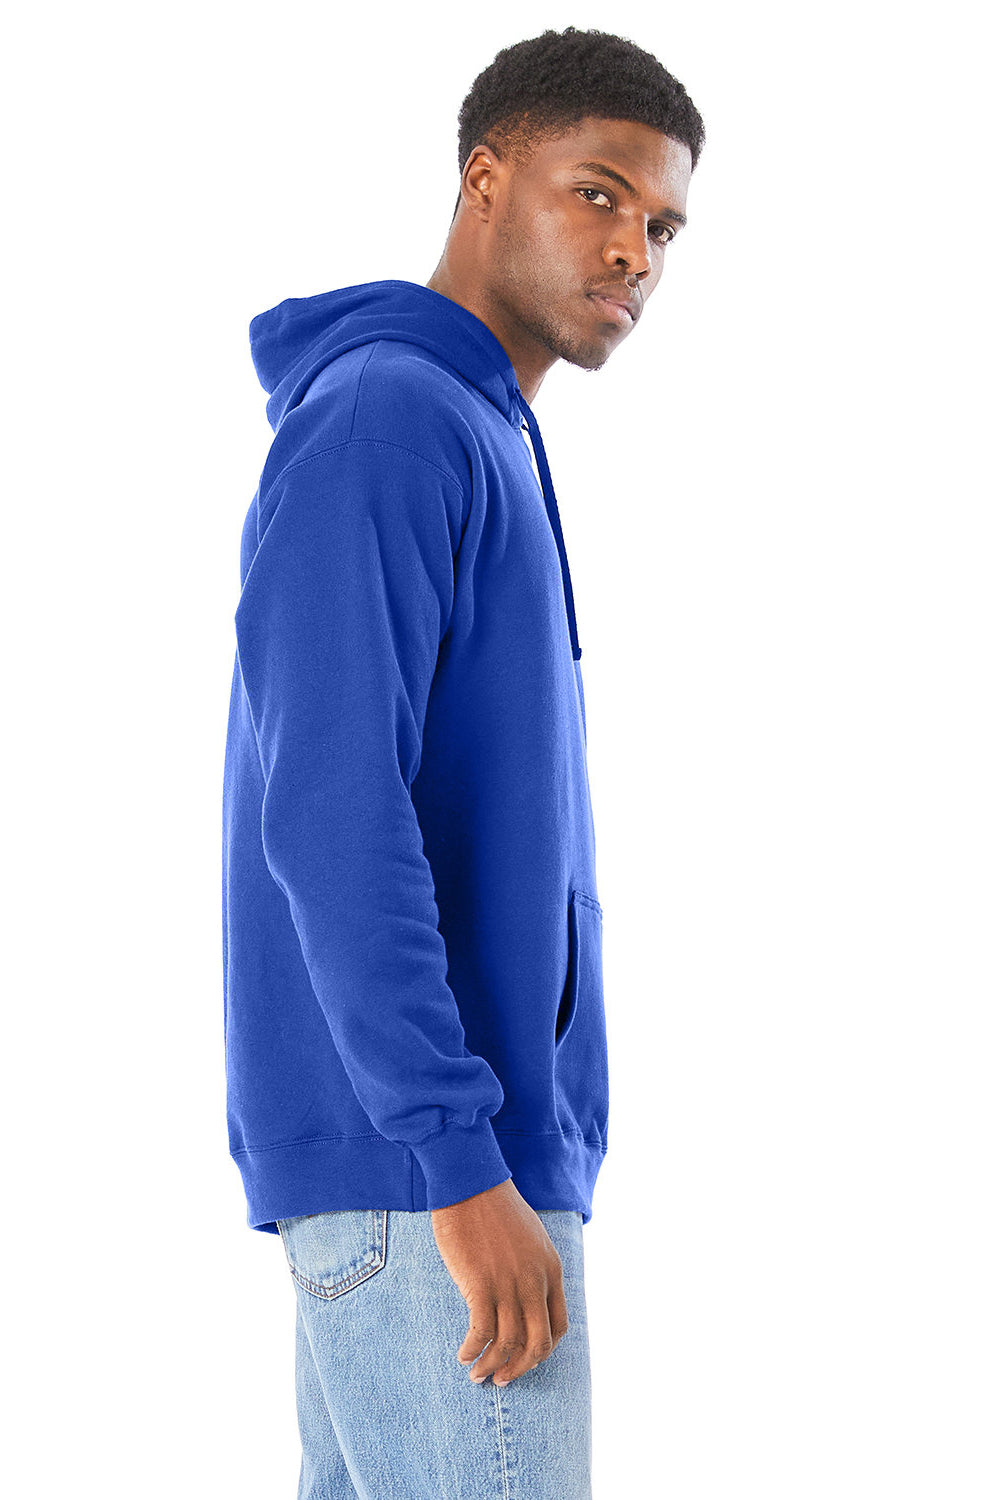 Hanes RS170 Mens Perfect Sweats Hooded Sweatshirt Hoodie Deep Royal Blue Side